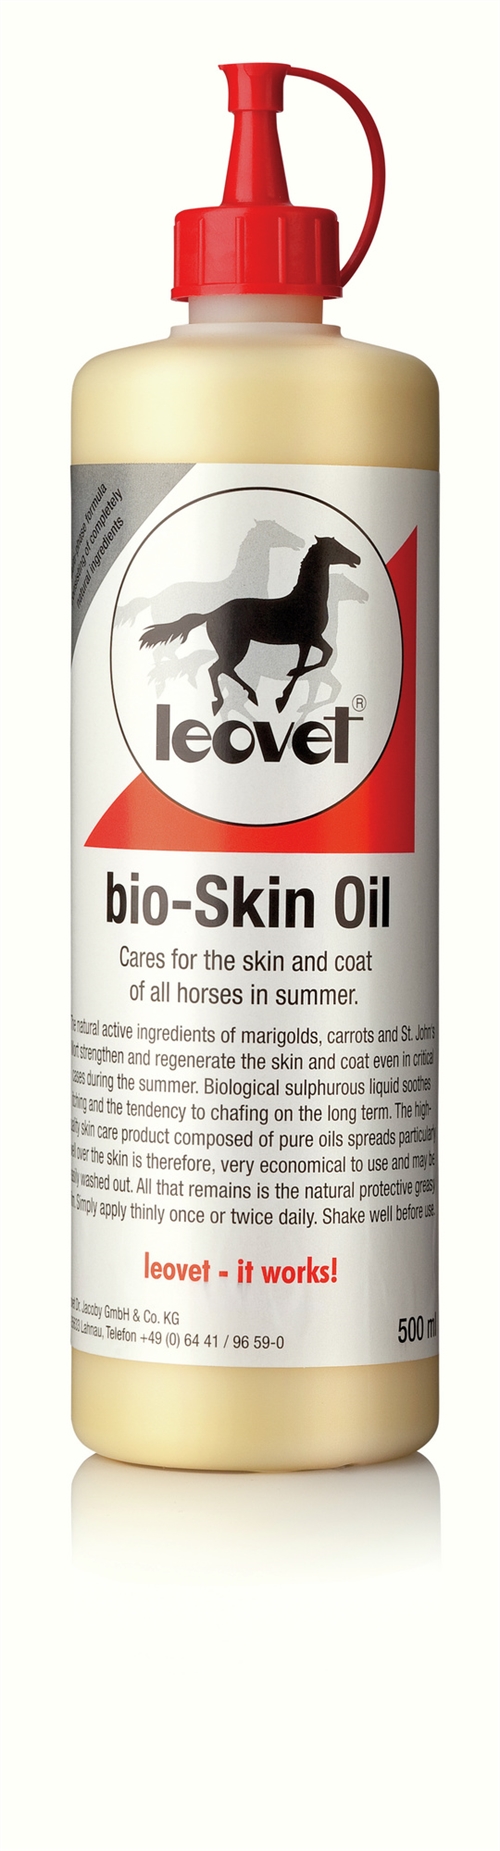 Hudplejeprodukt. Anvendes på irriteret og kløende hud, f.eks. hos heste med sommereksem.